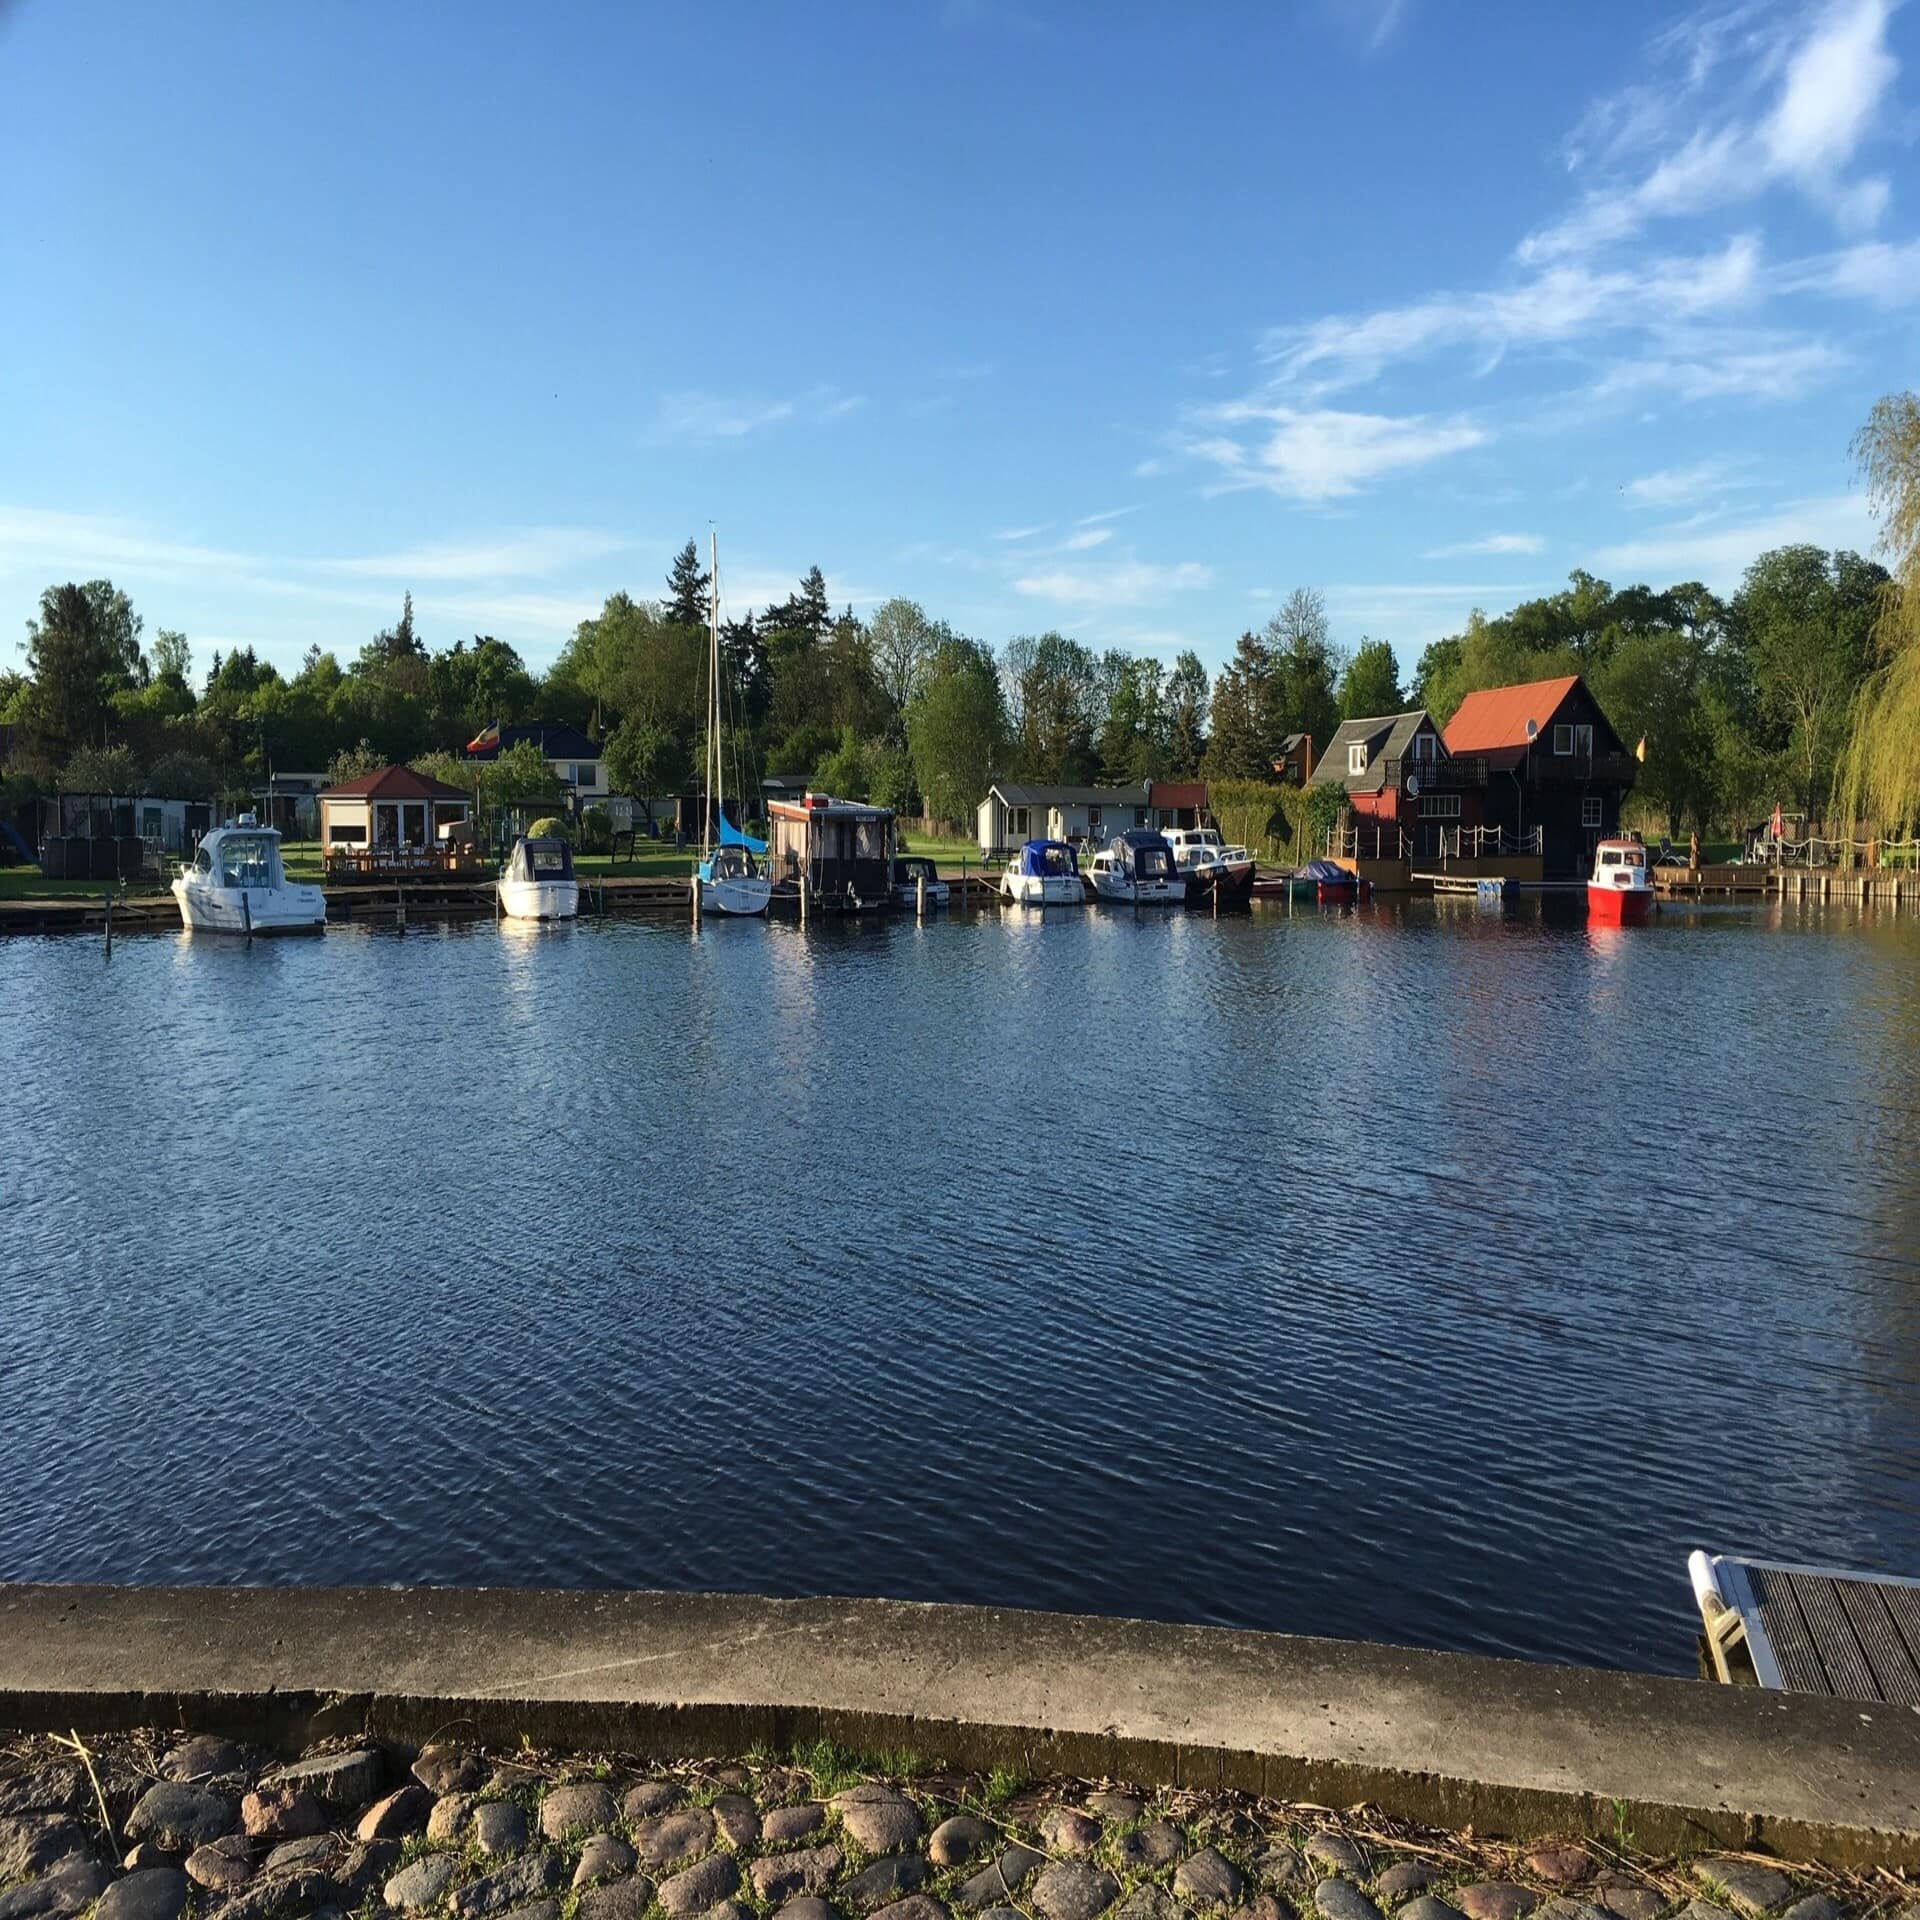 Blick über einen See hinweg auf das gegenüberliegende Ufer: Mehrere Boot vor Anker, dahinter kleine Häuser.